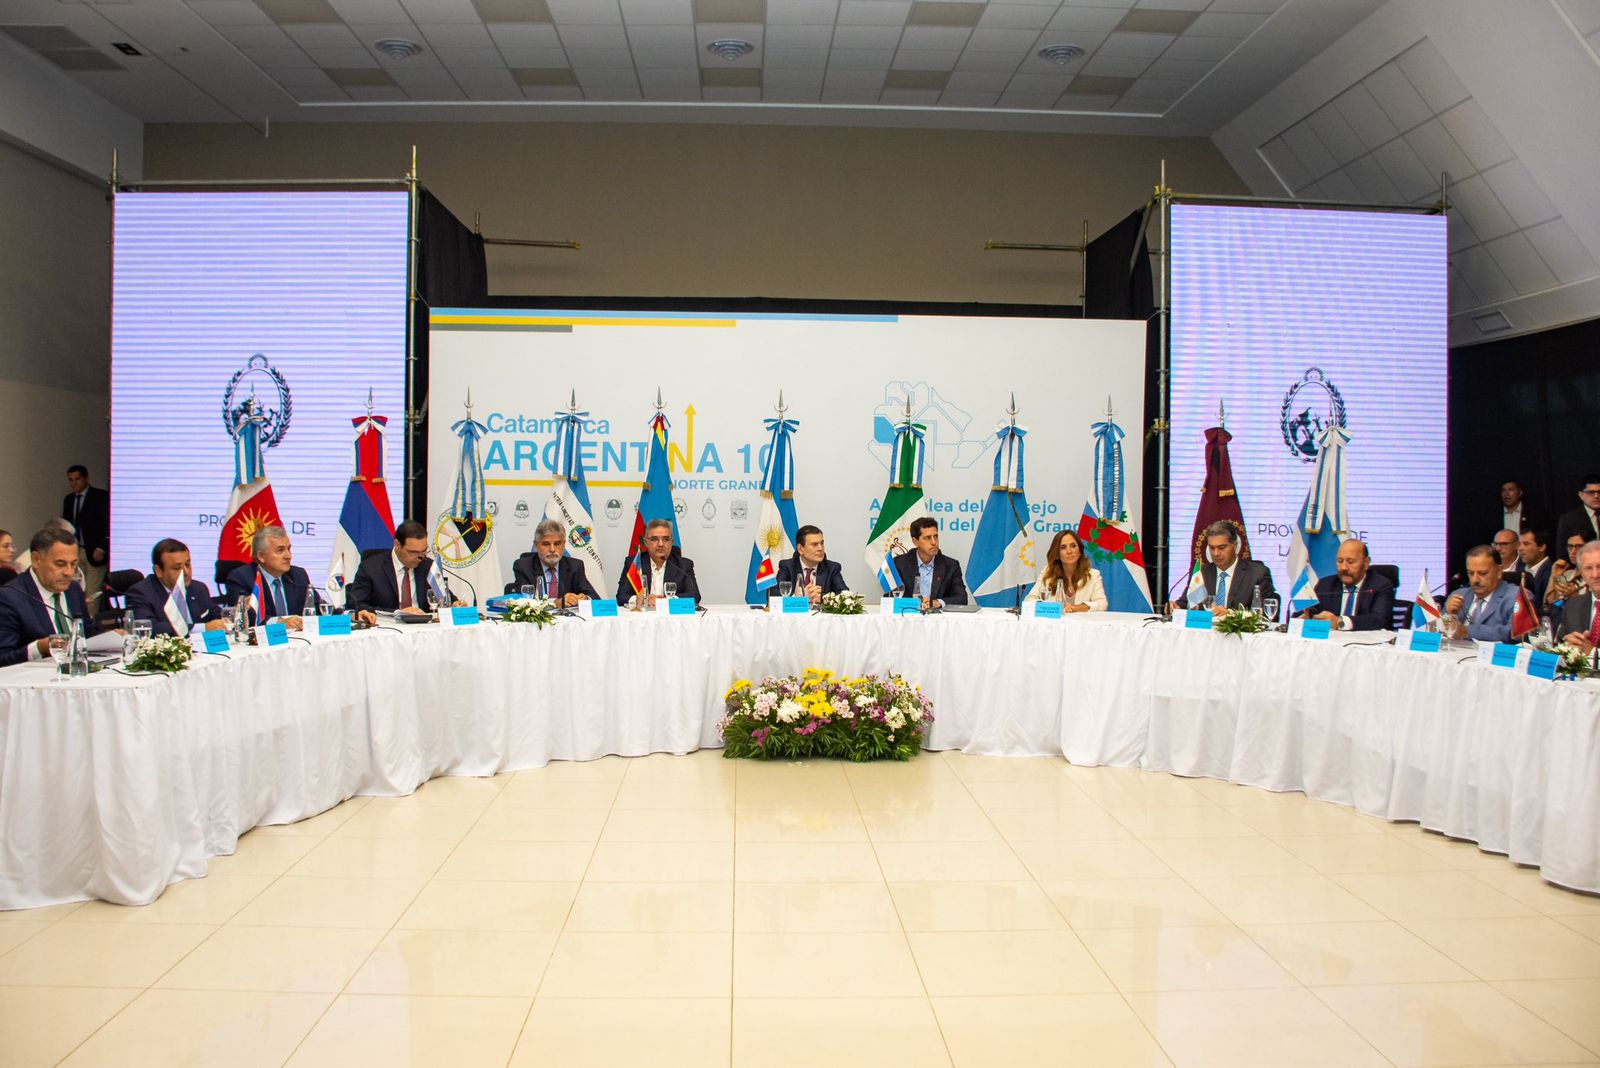 Mesa circular con mantel blanco en el que se encuentran uno al lado del otro los gobernadores del Grande Norte Argentino junto a la Ministra de Desarrollo Social.